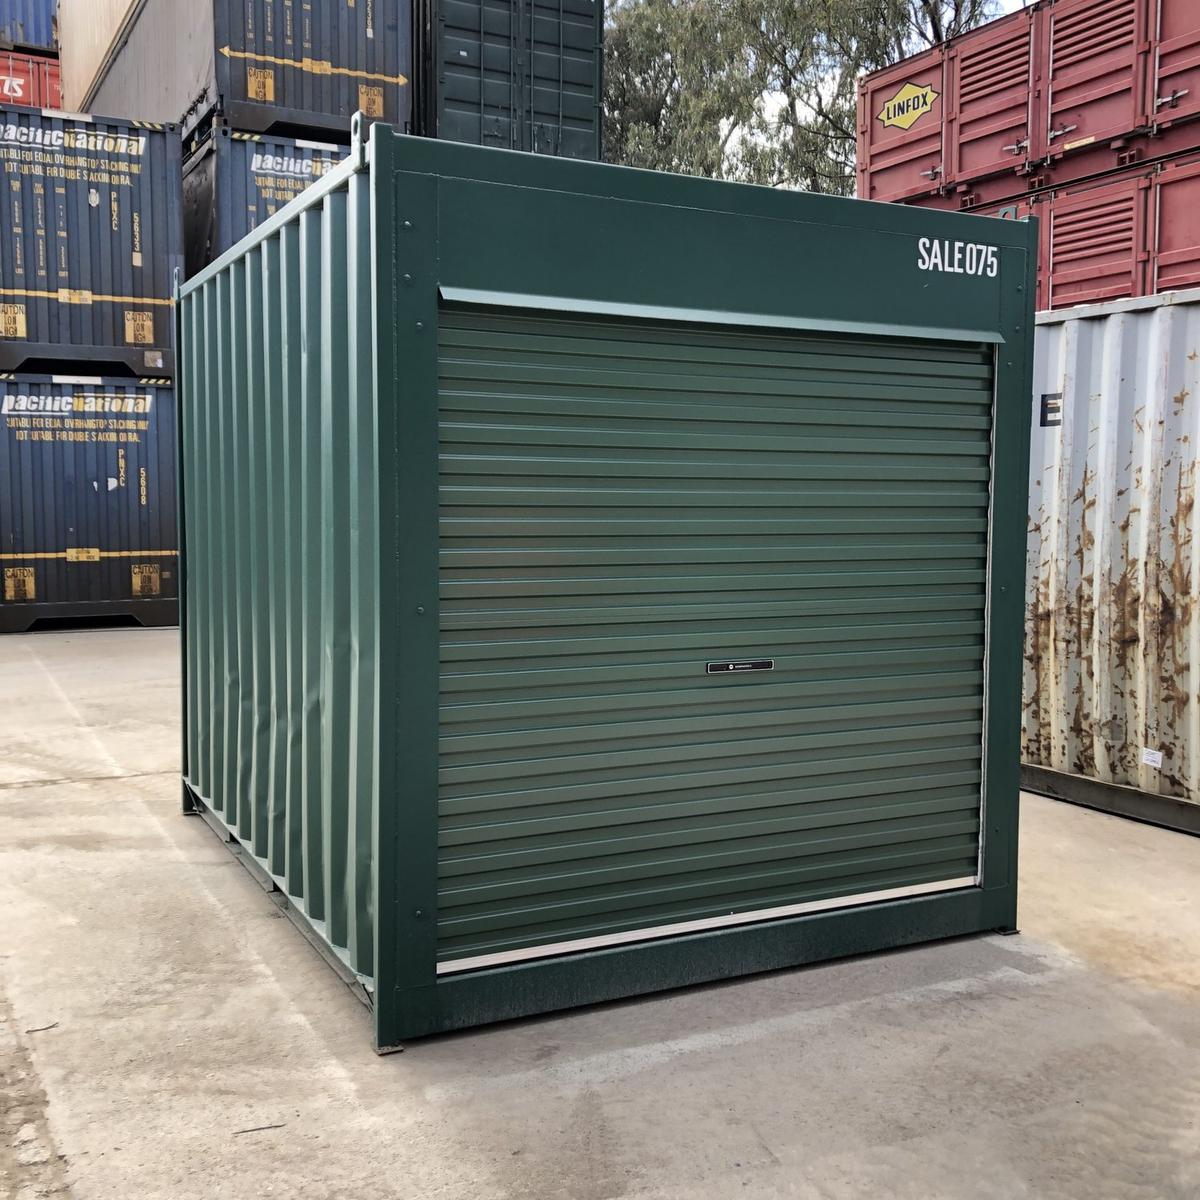 Value Industrial Container Roller Door